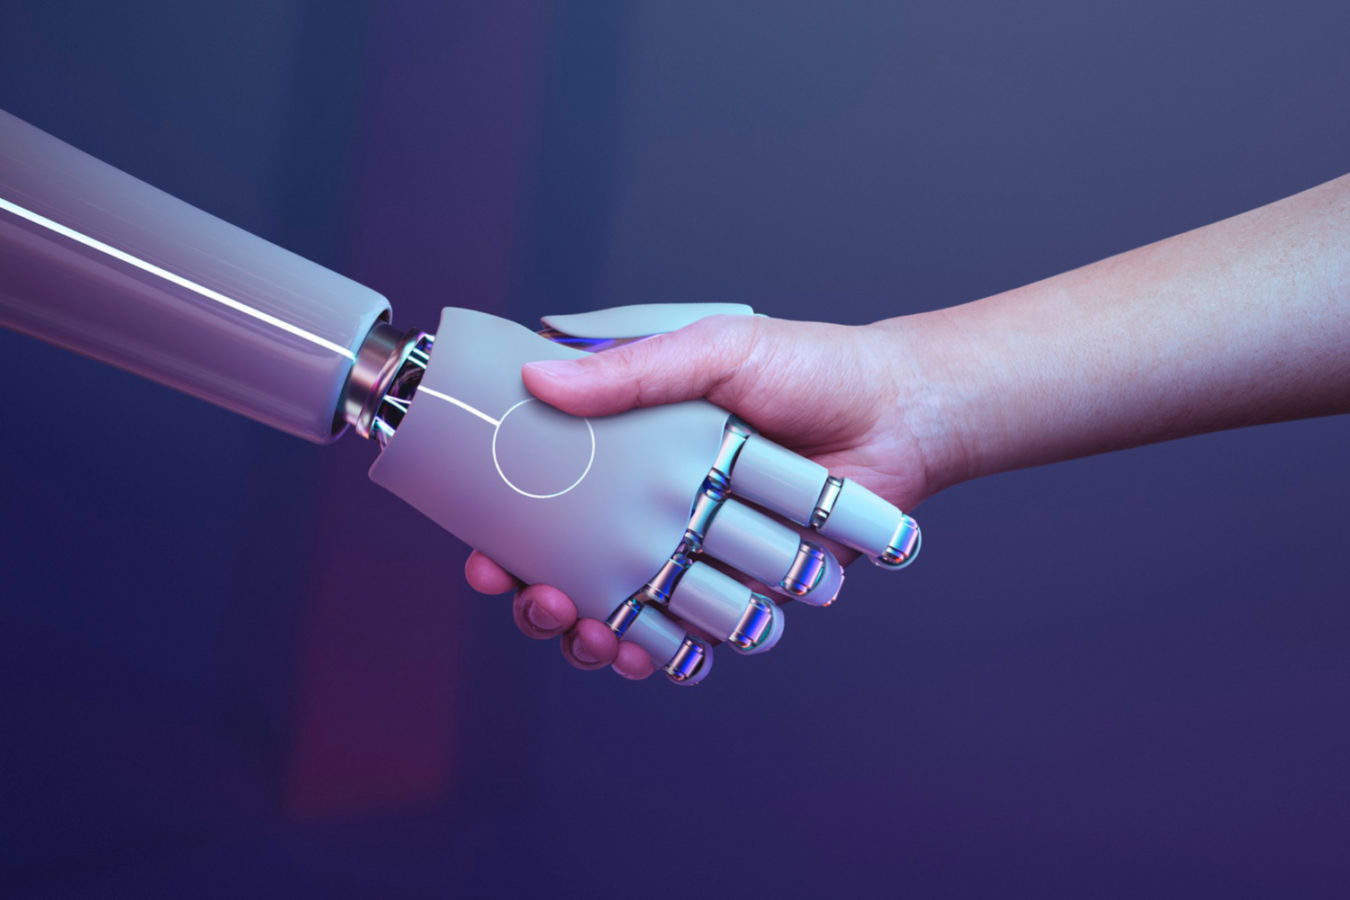 imagem mostra aperto de mão entre robô e homem para ilustrar um artigo sobre Inteligência Artificial